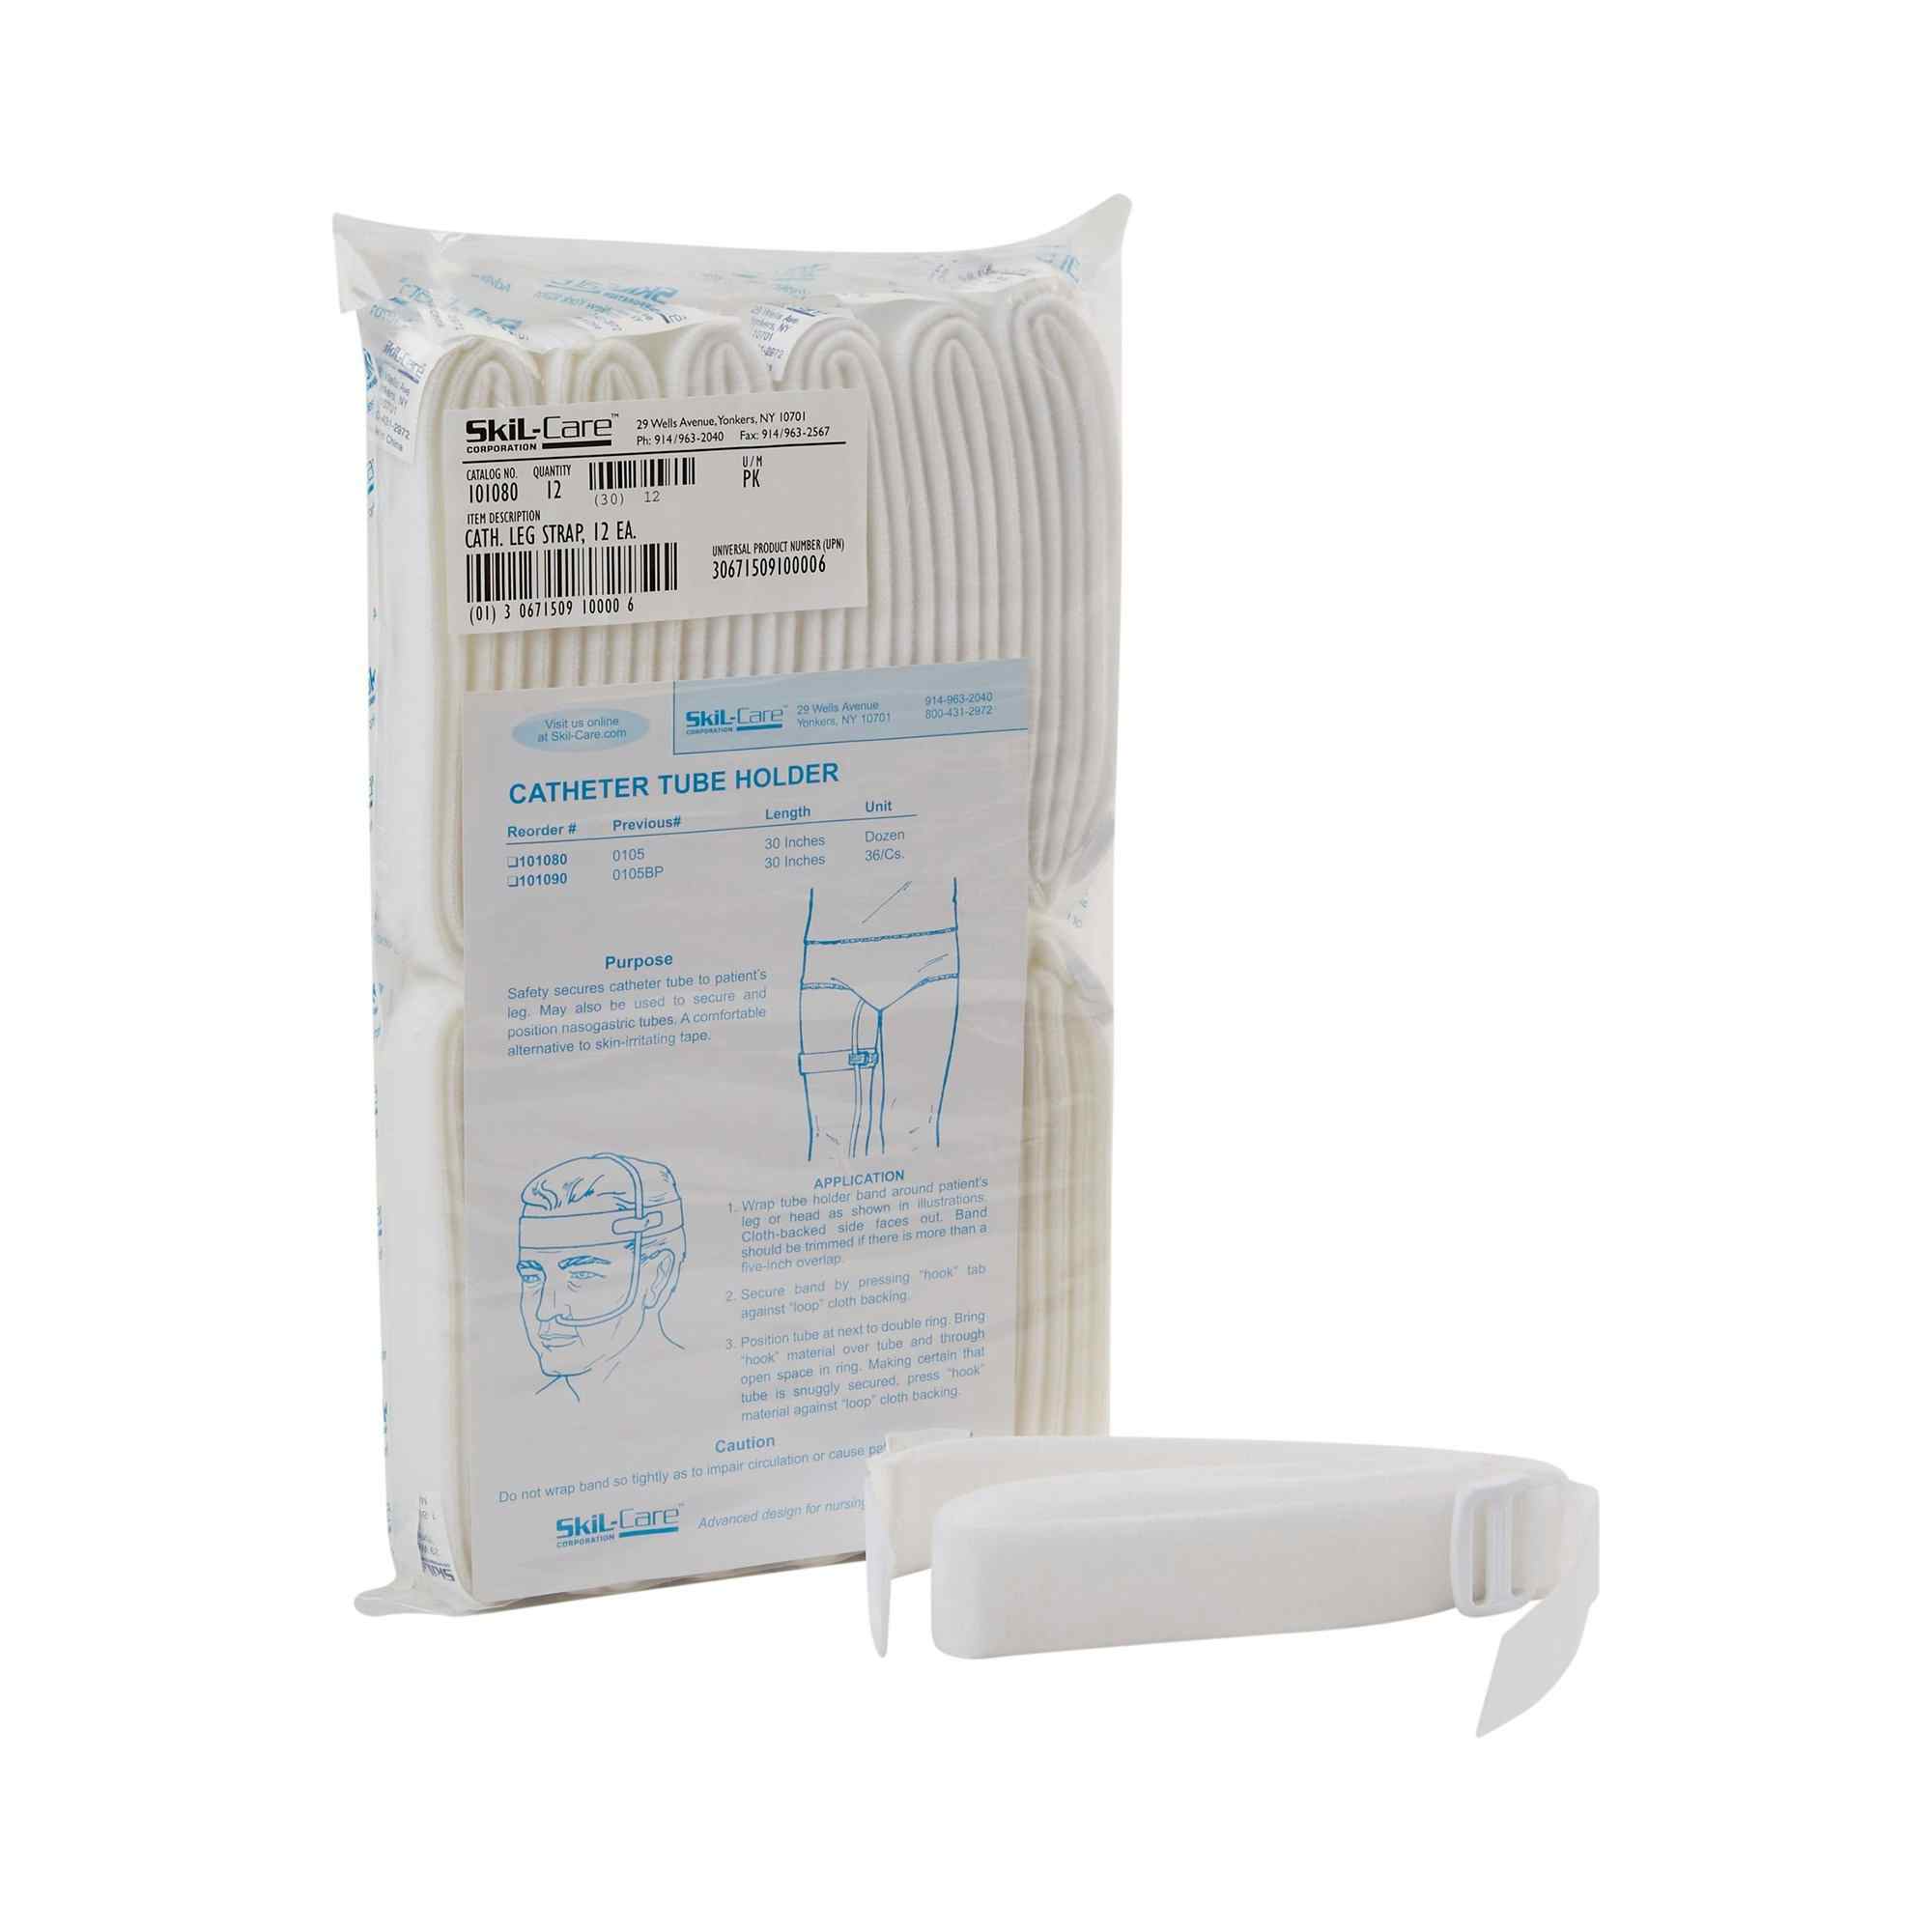 Skil-Care Catheter Tube Holder, 101080, Pack of 12